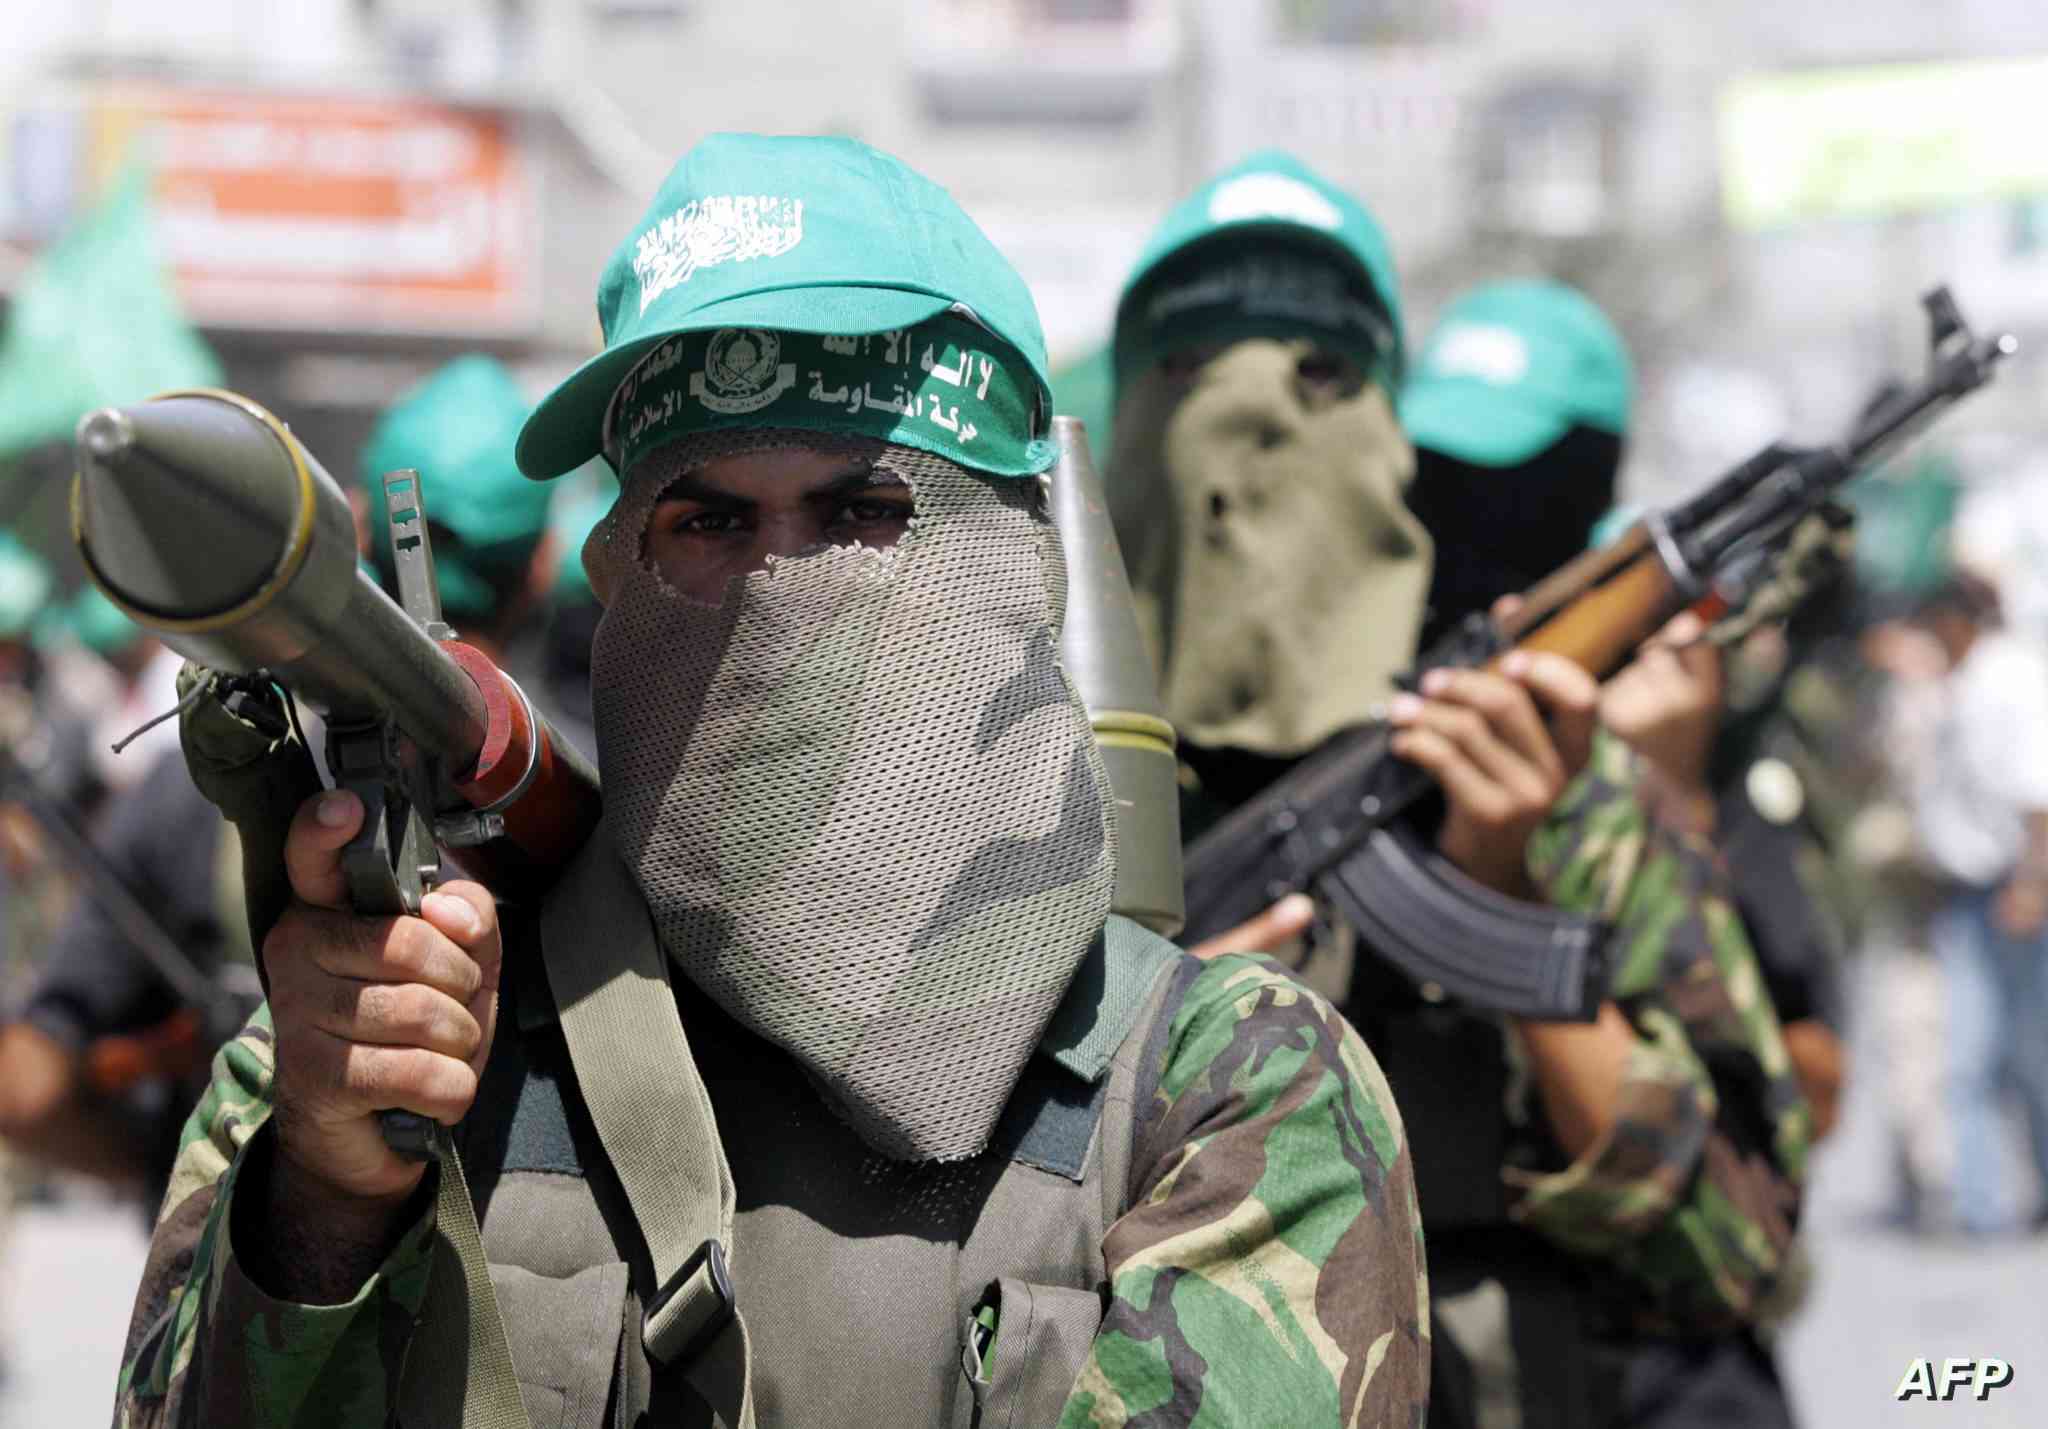 حماس تكشف صوراً مفبركة للاحتلال تعود لـ 10 أعوام مضت